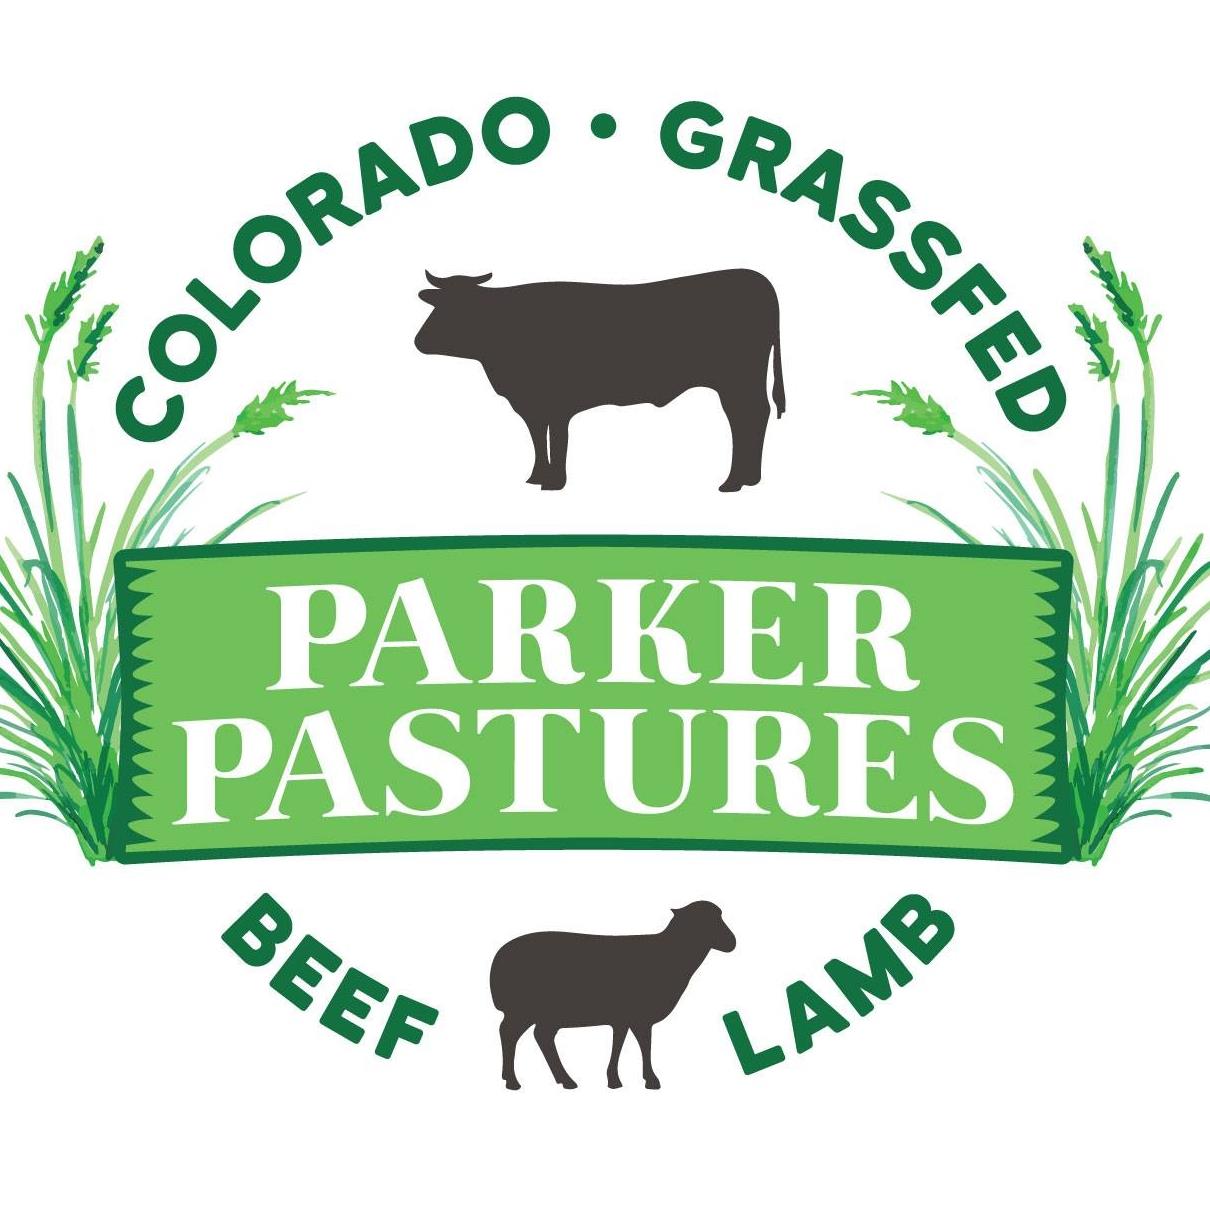 Parker Pastures - Land to Market Member - Logo